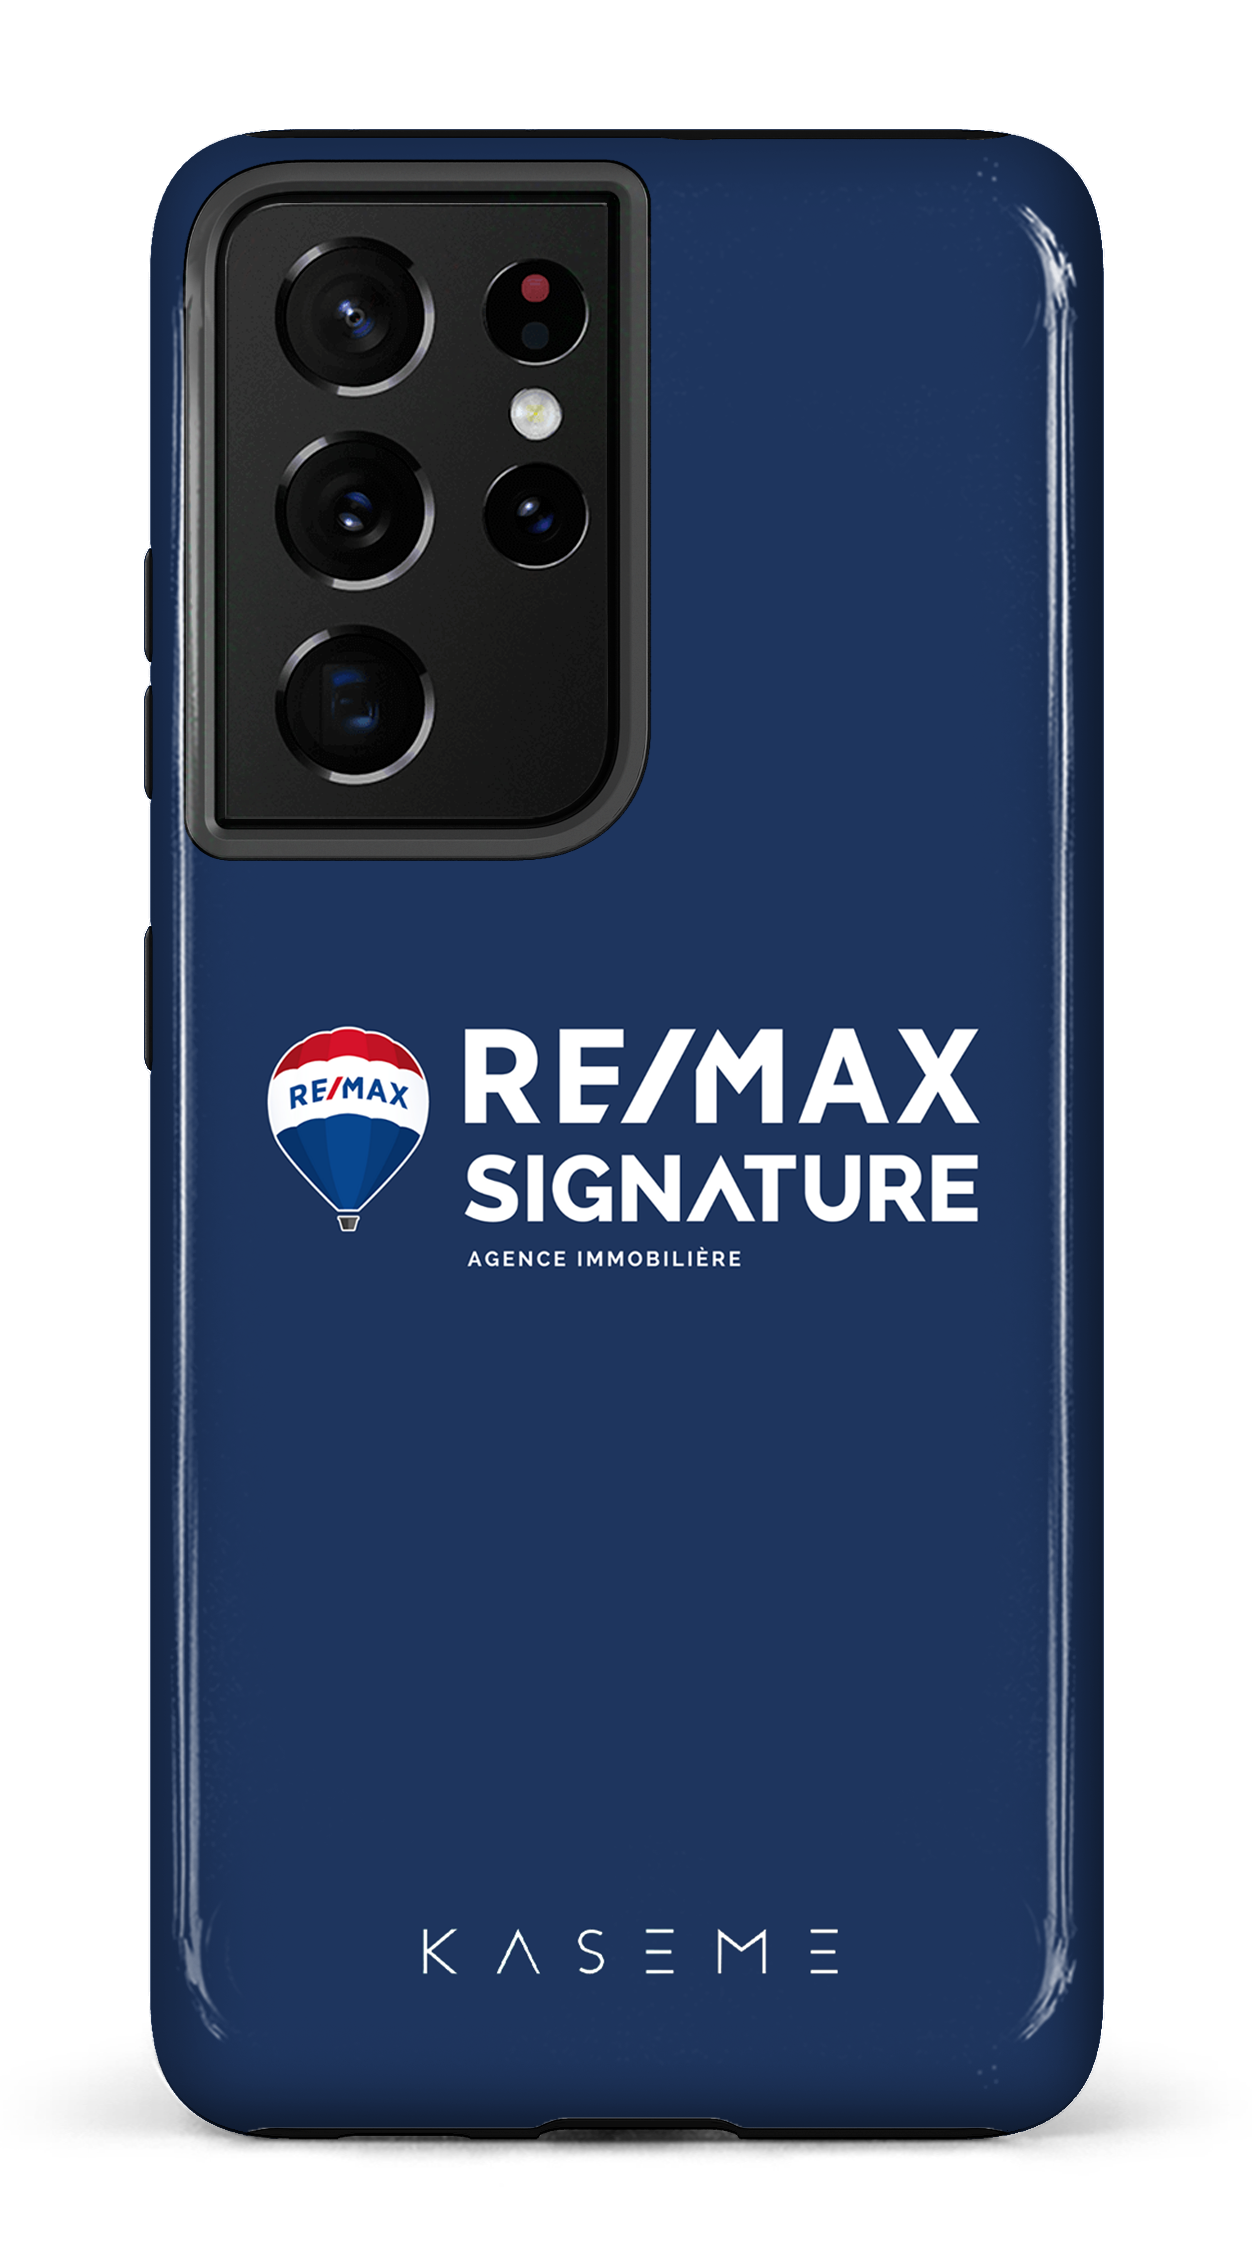 Remax Signature Bleu - Galaxy S21 Ultra